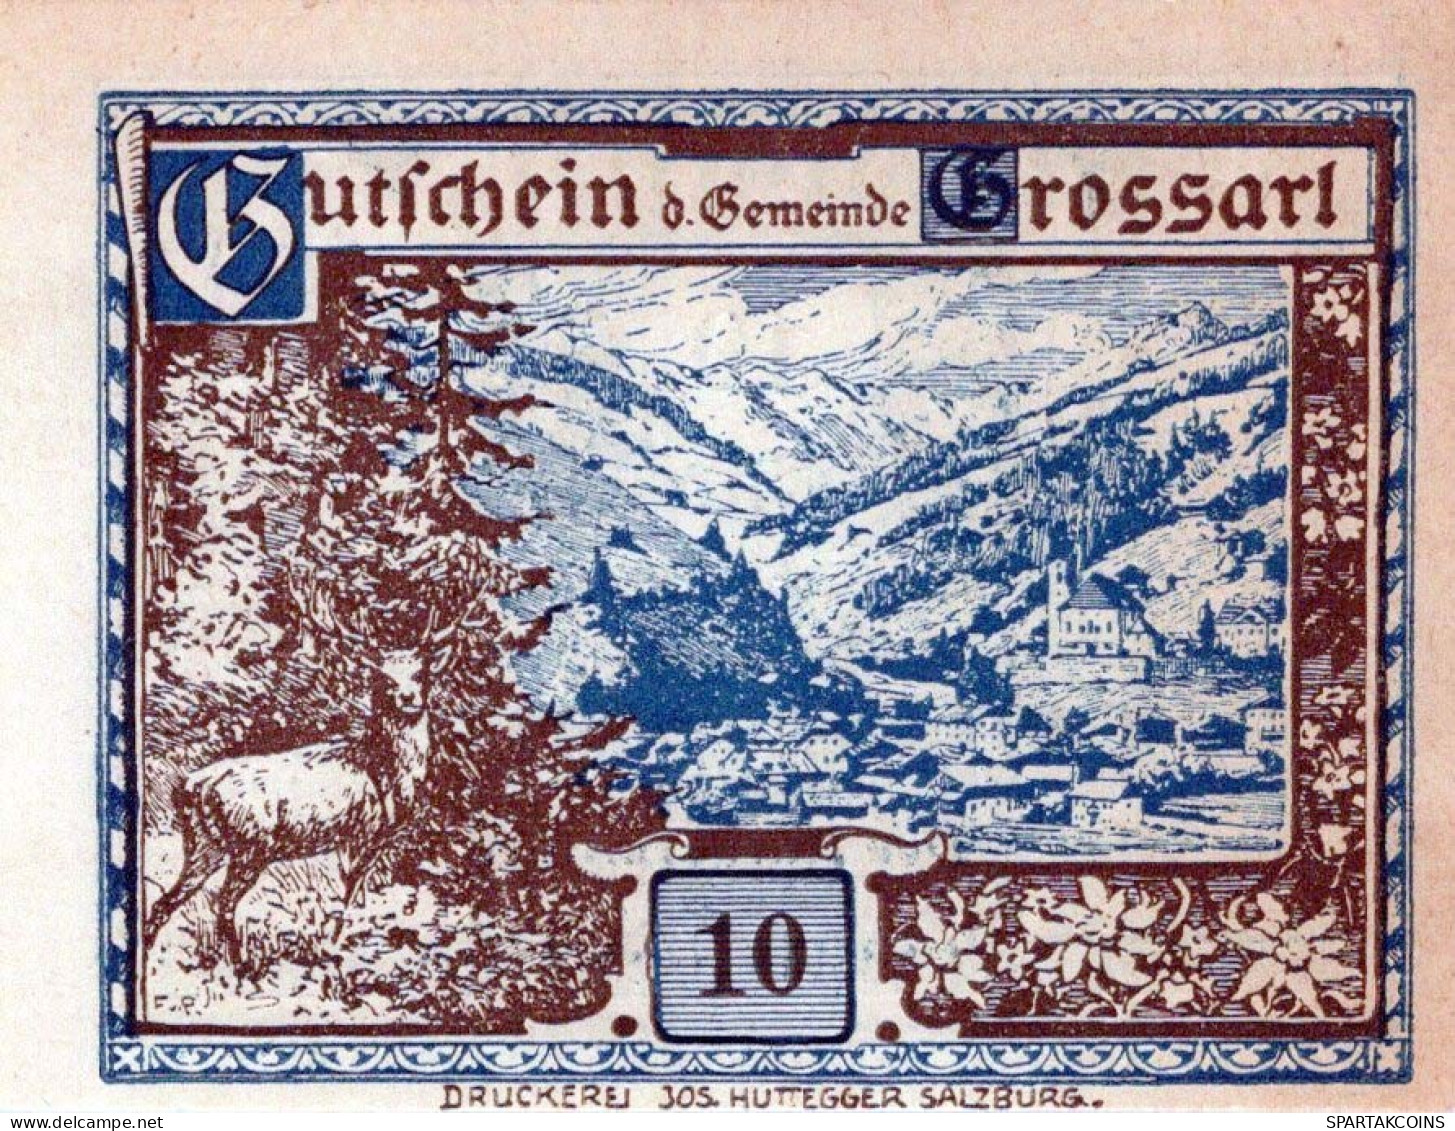 10 HELLER 1920 Stadt GROSSARL Salzburg Österreich Notgeld Banknote #PE998 - Lokale Ausgaben